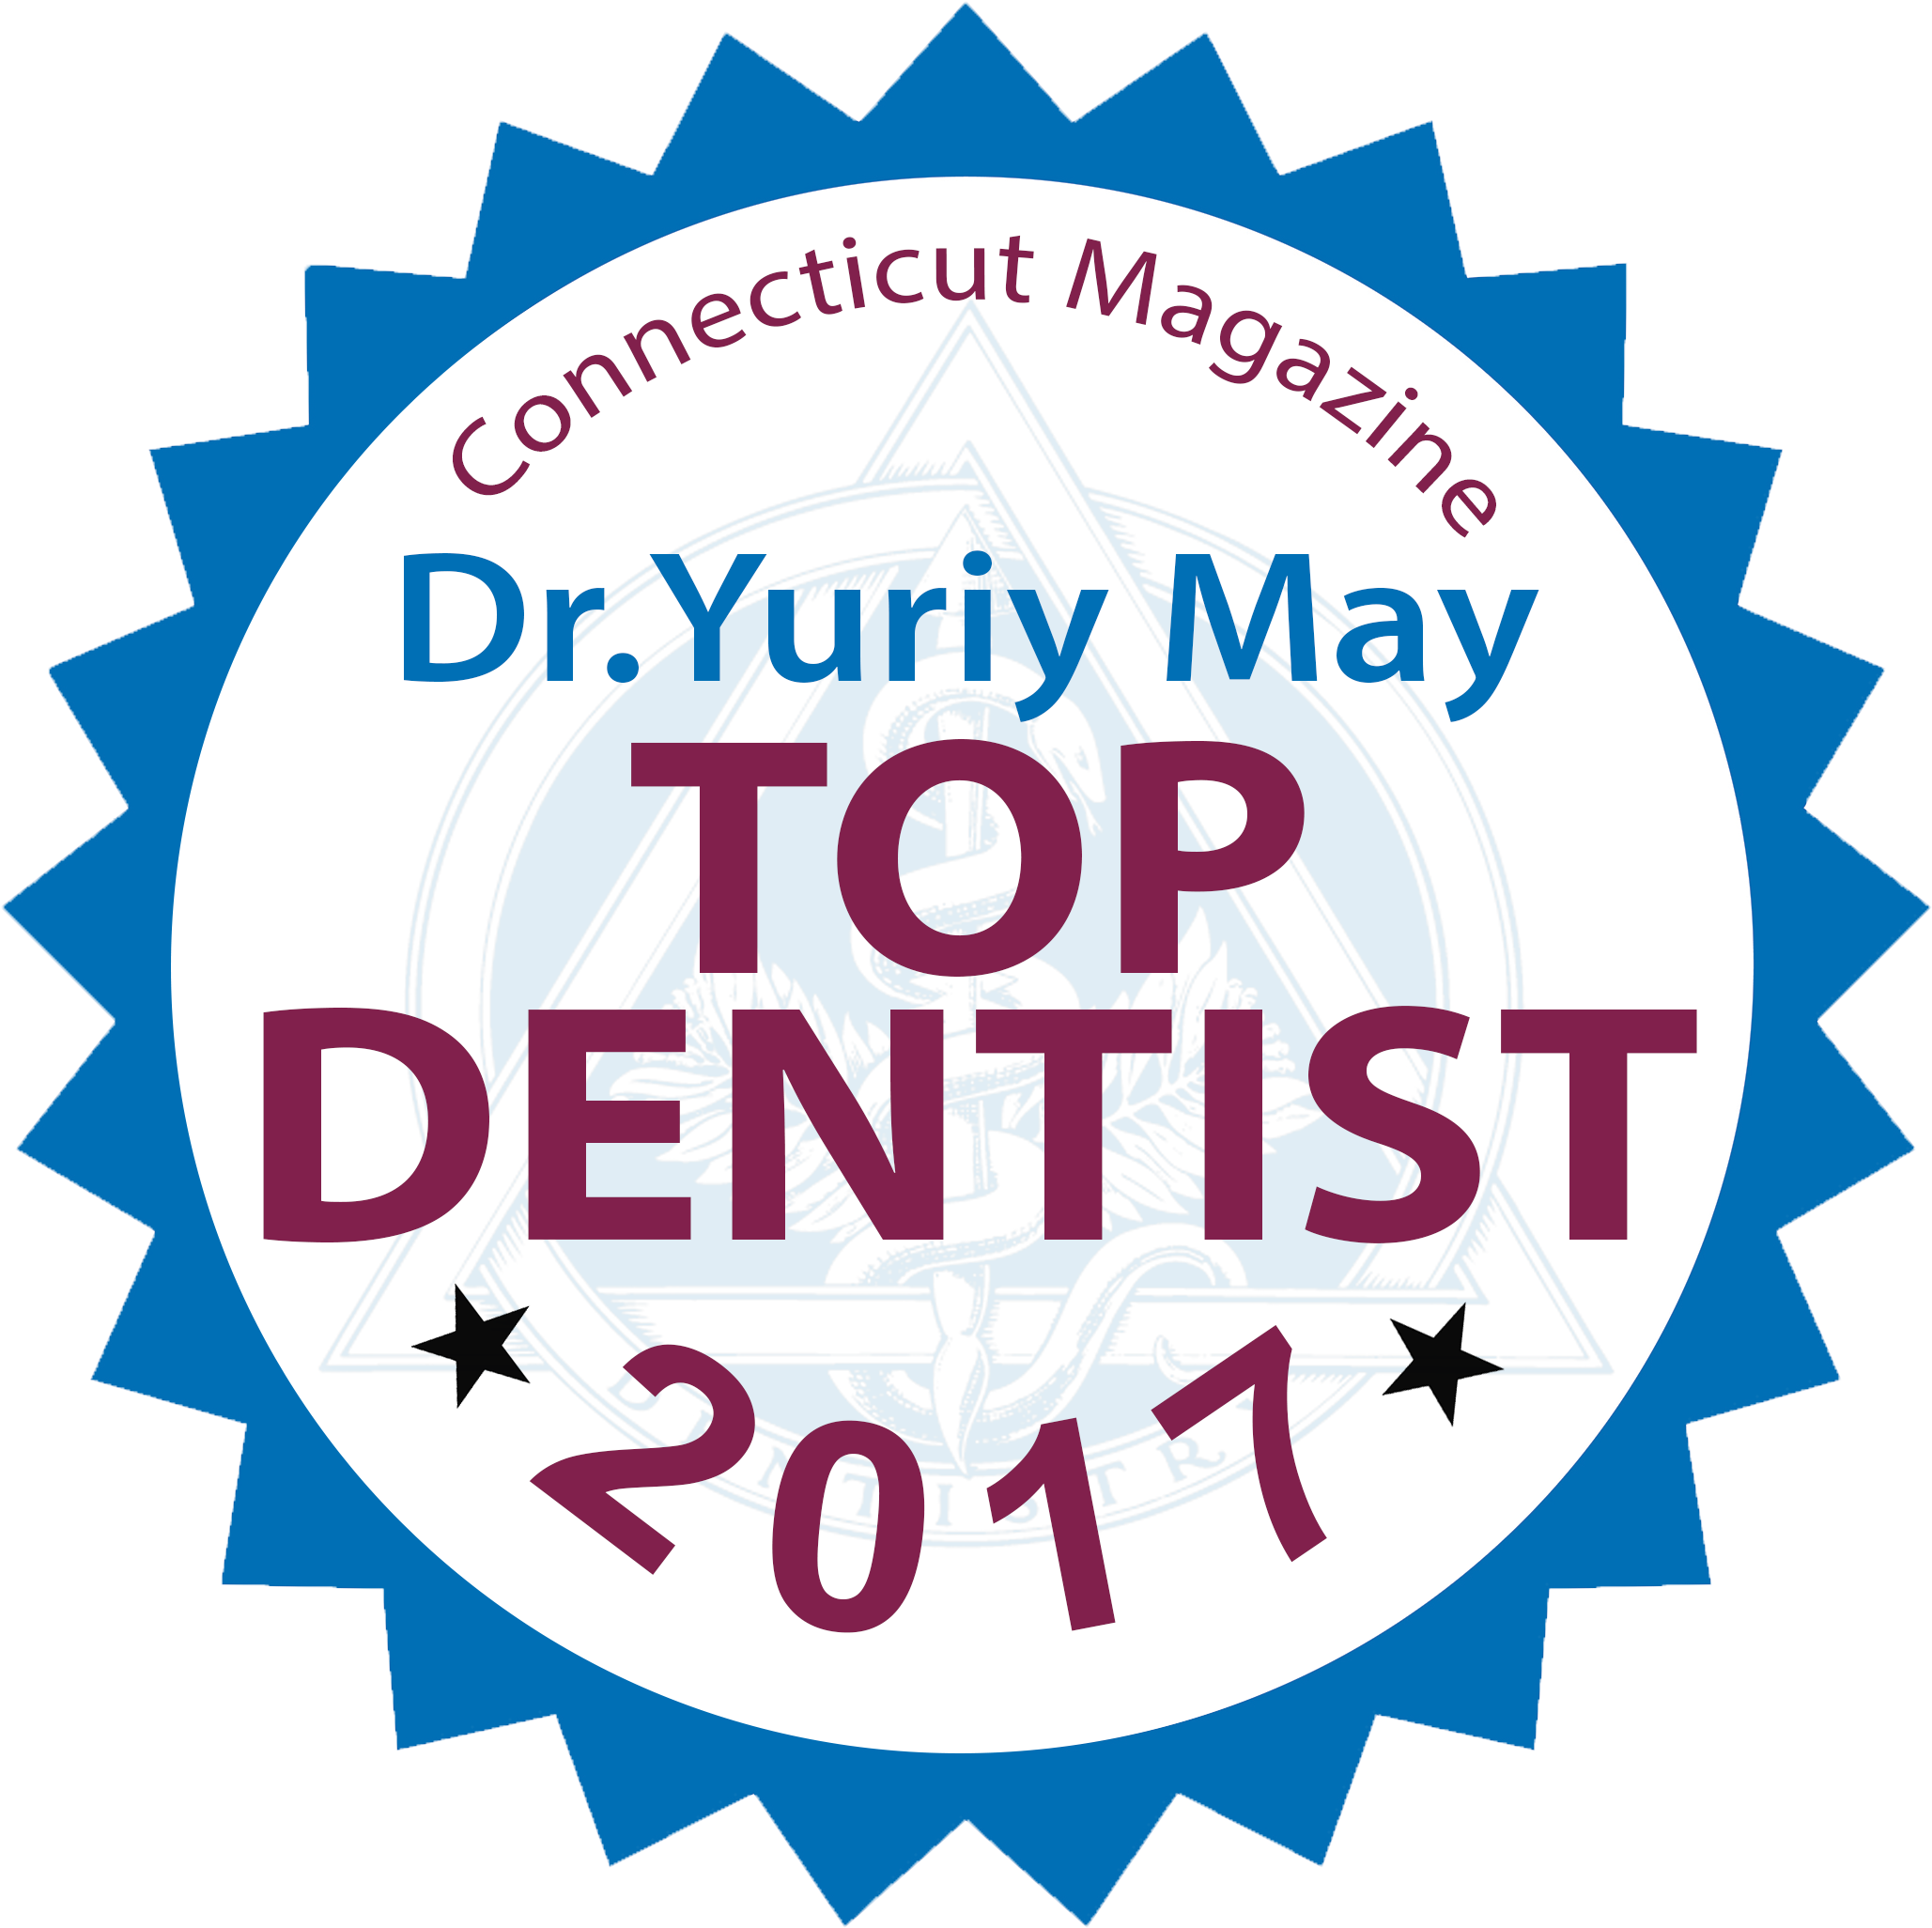 Top Connecticut Dentist Dr - Connecticut Magazine Top Dentist 2017 (2100x2280)